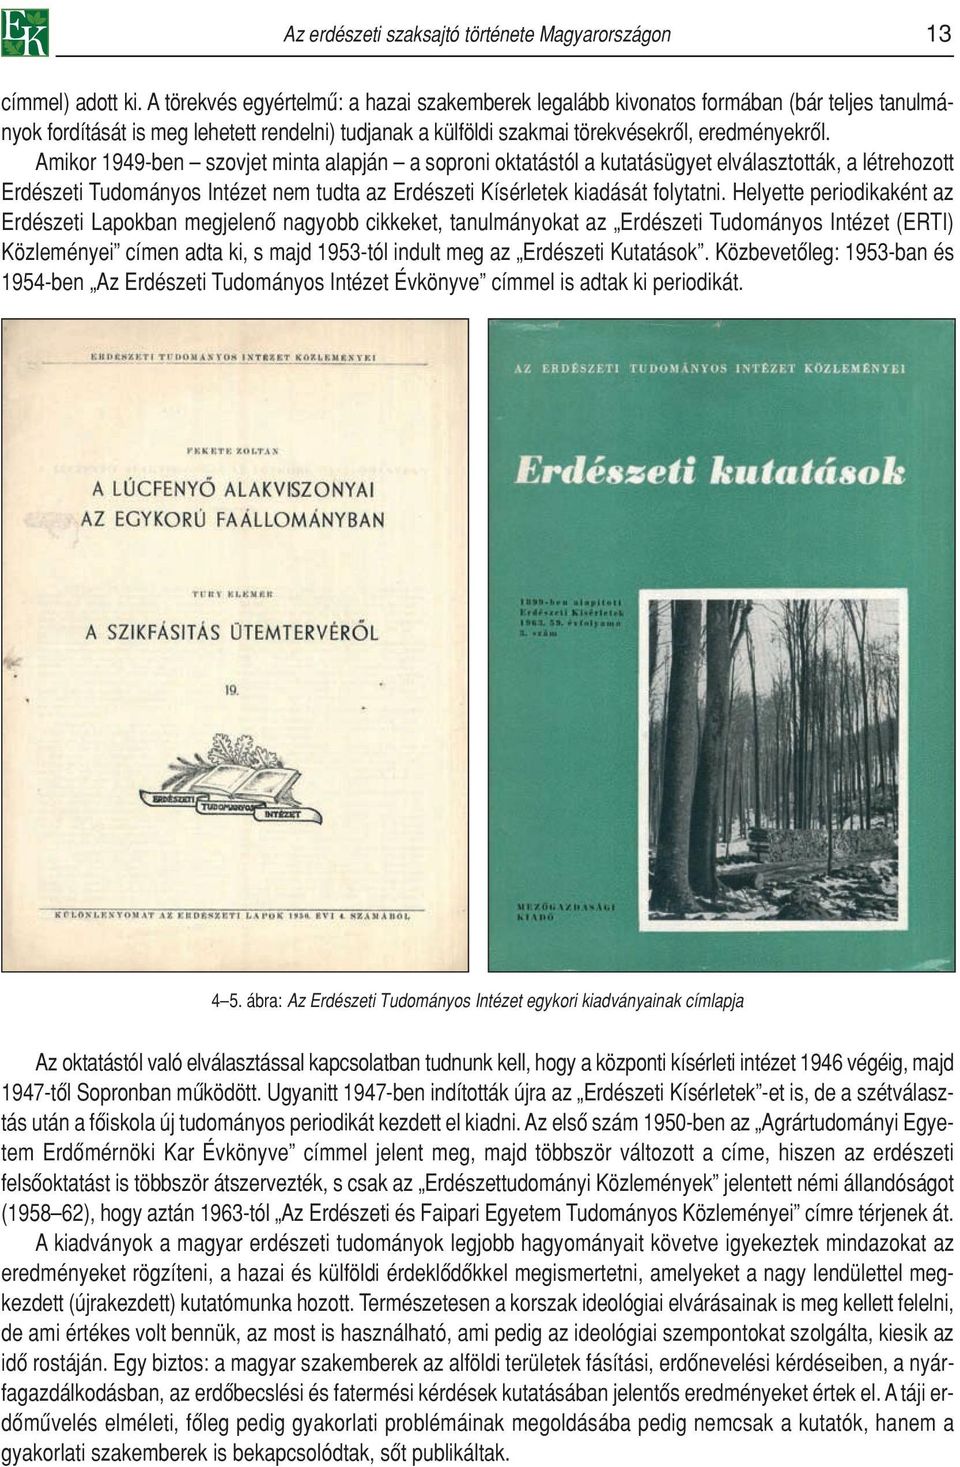 Amikor 1949-ben szovjet minta alapján a soproni oktatástól a kutatásügyet elválasztották, a létrehozott Erdészeti Tudományos Intézet nem tudta az Erdészeti Kísérletek kiadását folytatni.